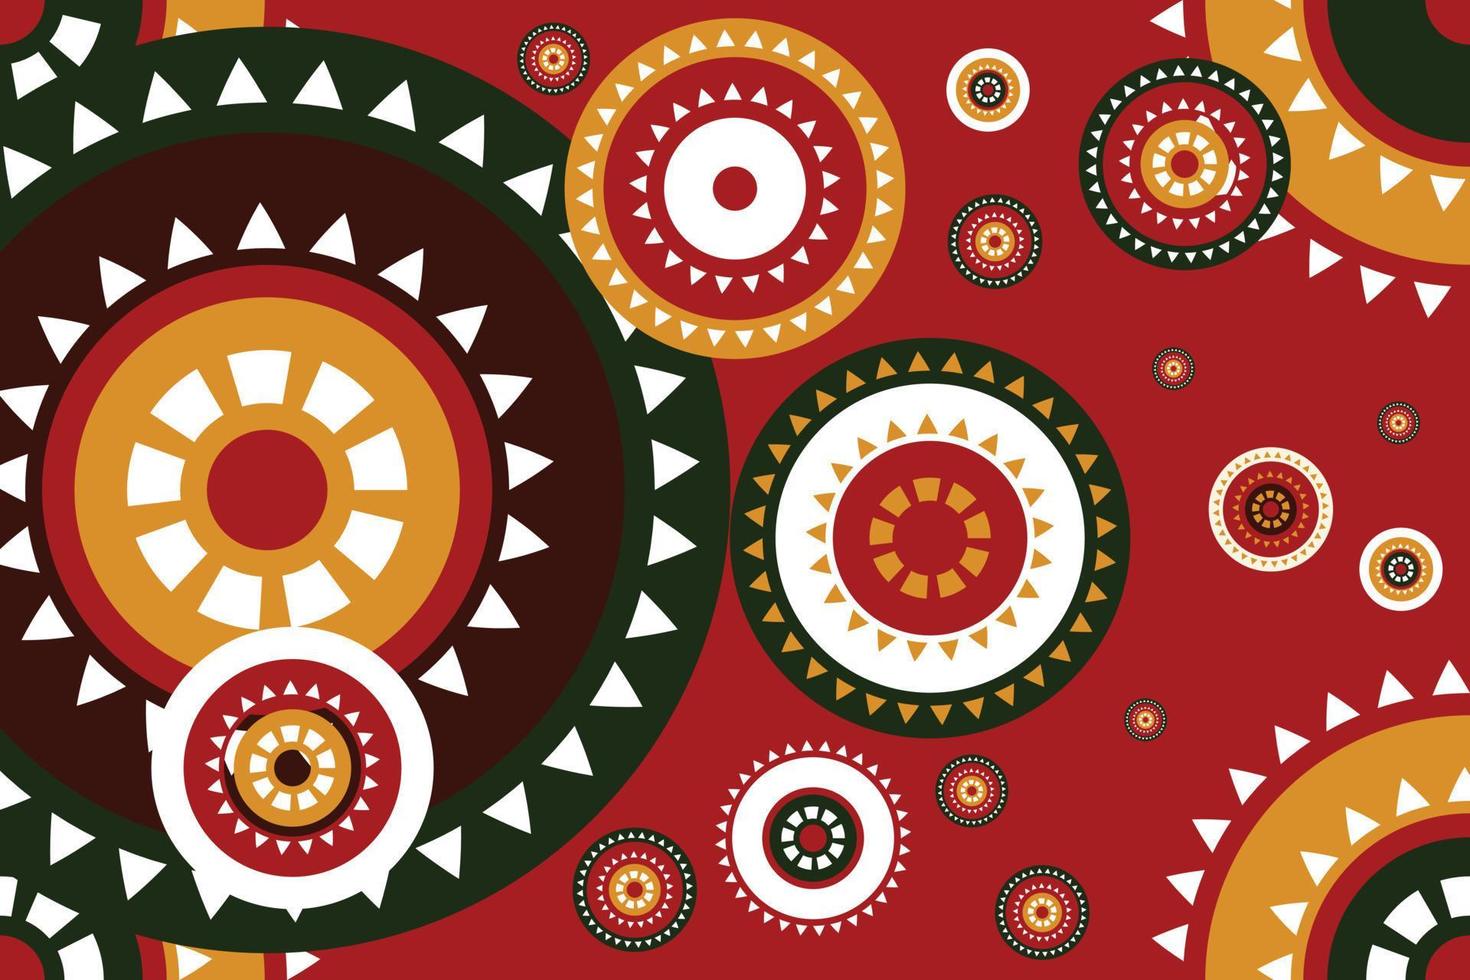 motifs de tissu kente africain vecteur motif harmonieux traditionnel design oriental ethnique pour l'arrière-plan. broderie folklorique, indienne, scandinave, gitane, mexicaine, tapis africain, papier peint.